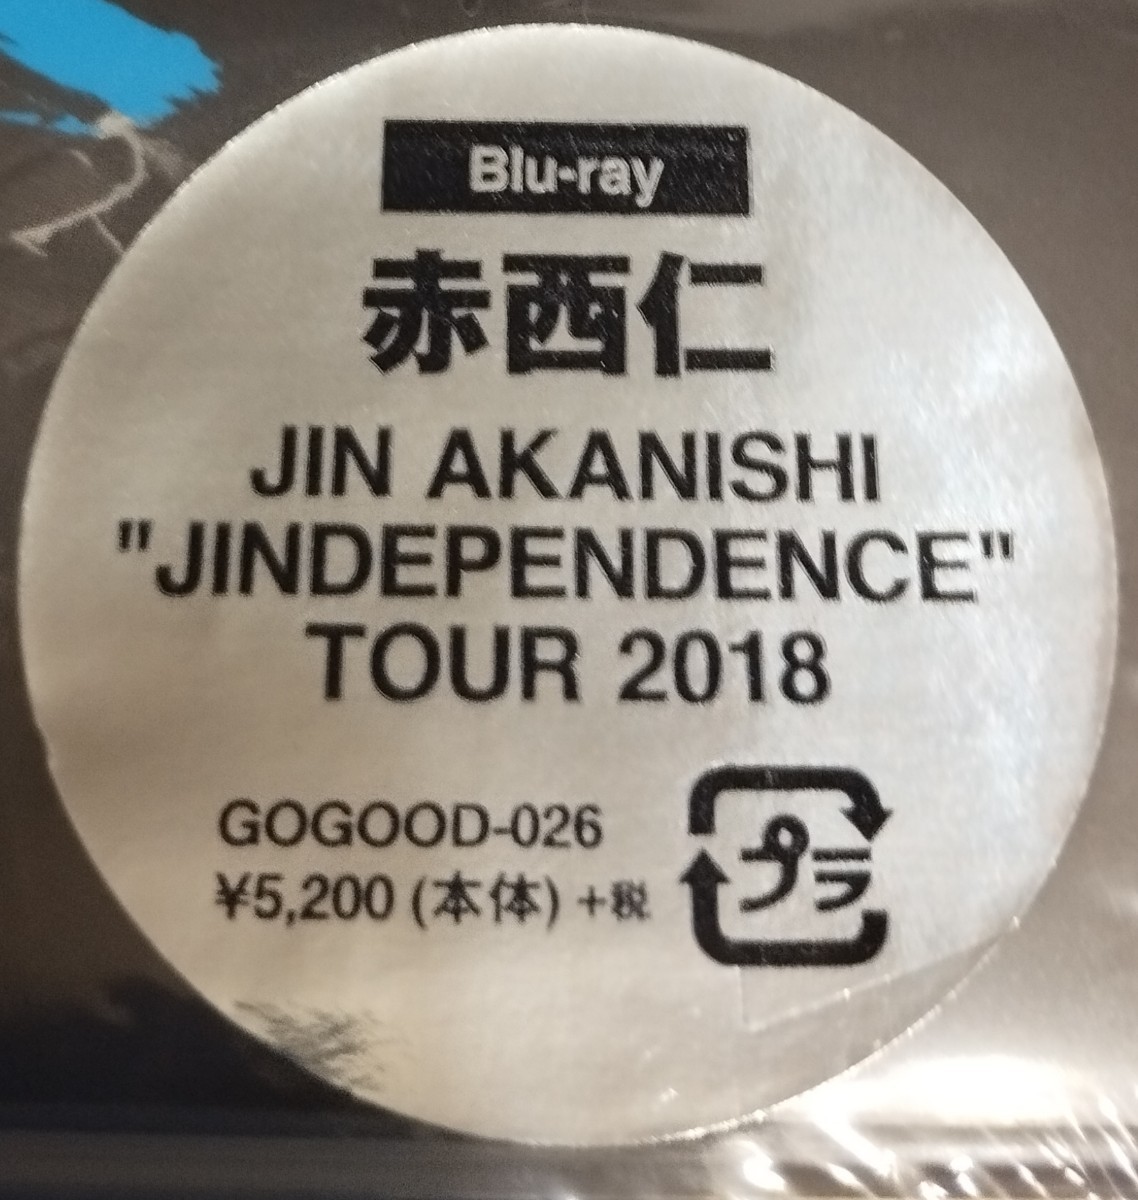 赤西仁JIN AKANISHI ”JINDEPENDENCE”TOUR 2018 in ブルーレイ BIu-ray_画像2